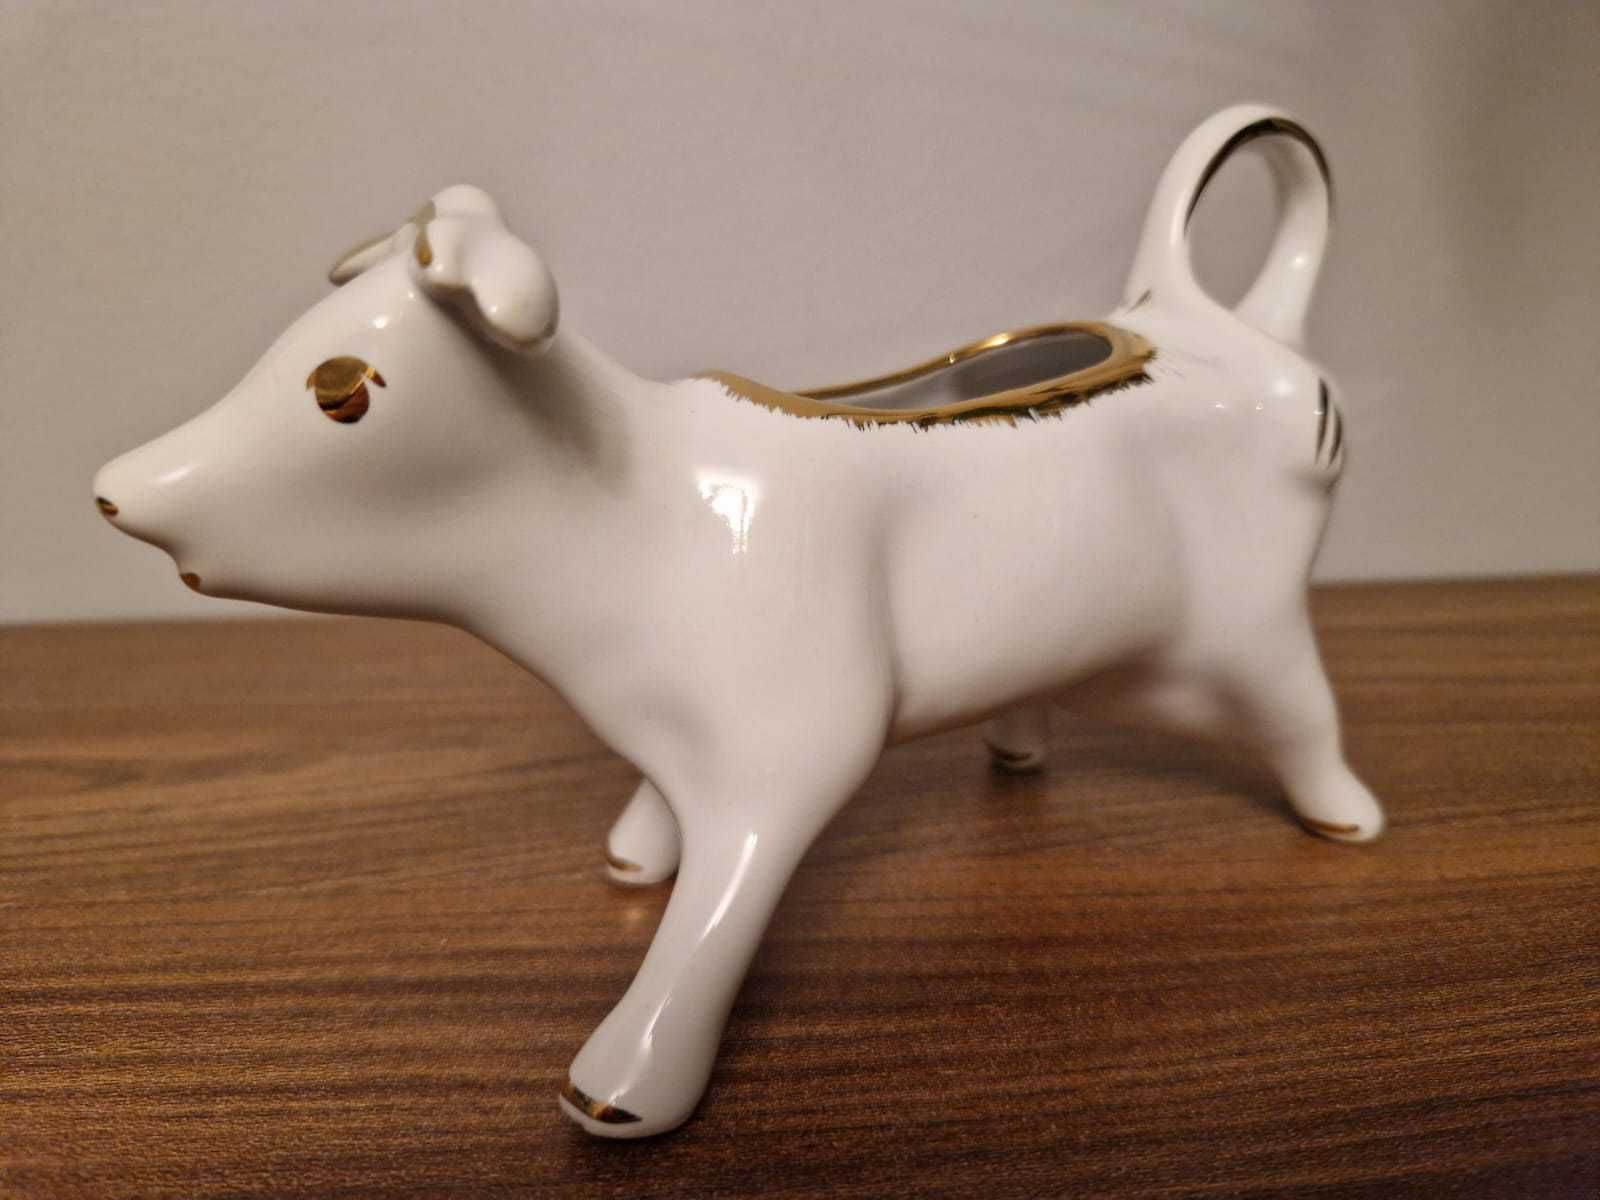 Dzbanuszek do mleka z porcelany w kształcie krowy